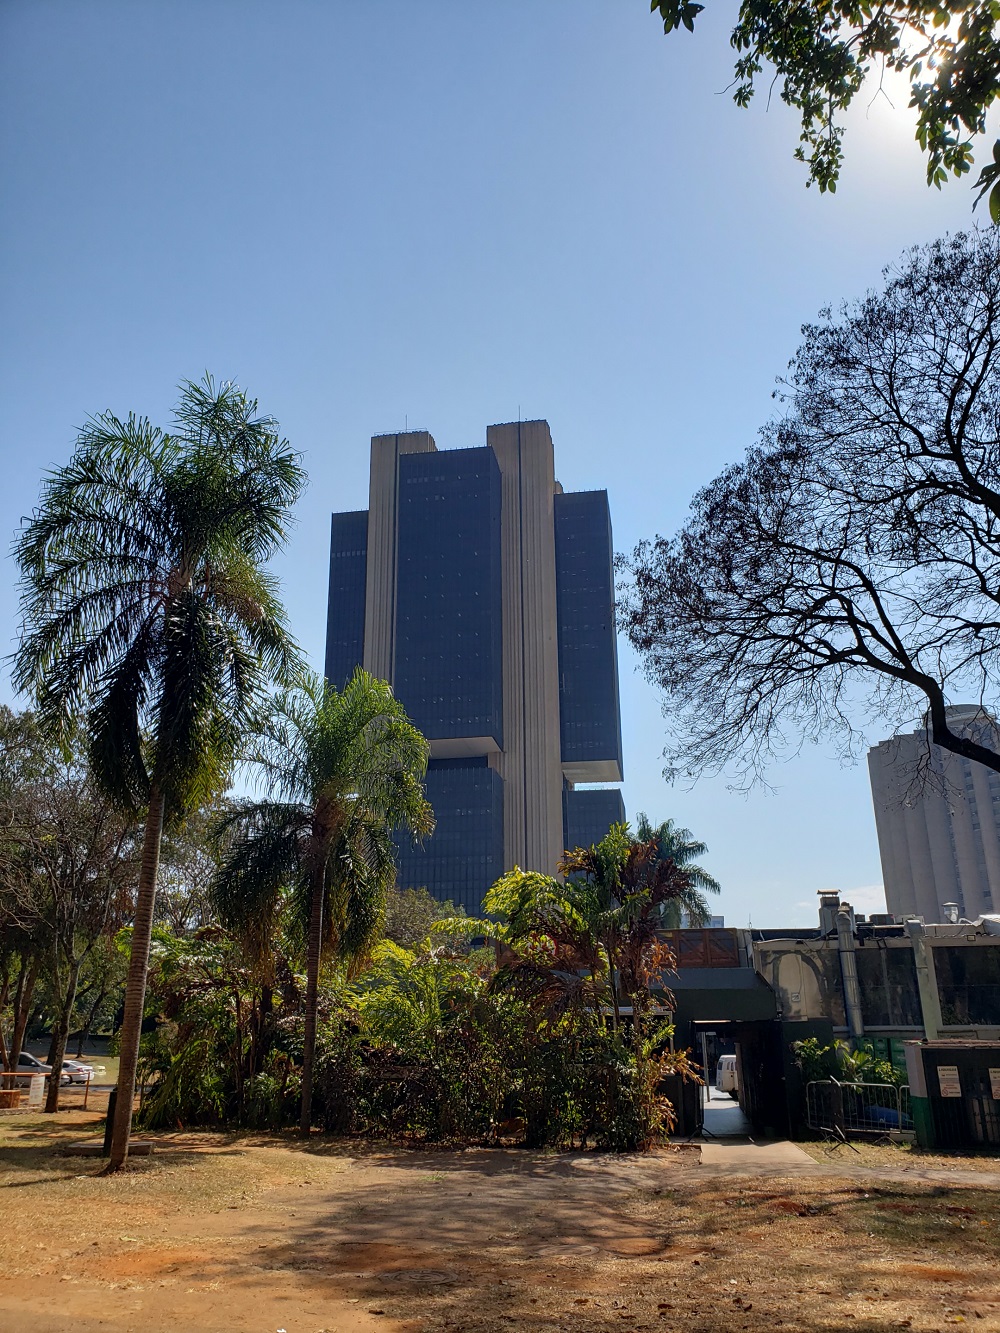 Fotografia do Banco Central do Brasil em um dia durante a tarde.